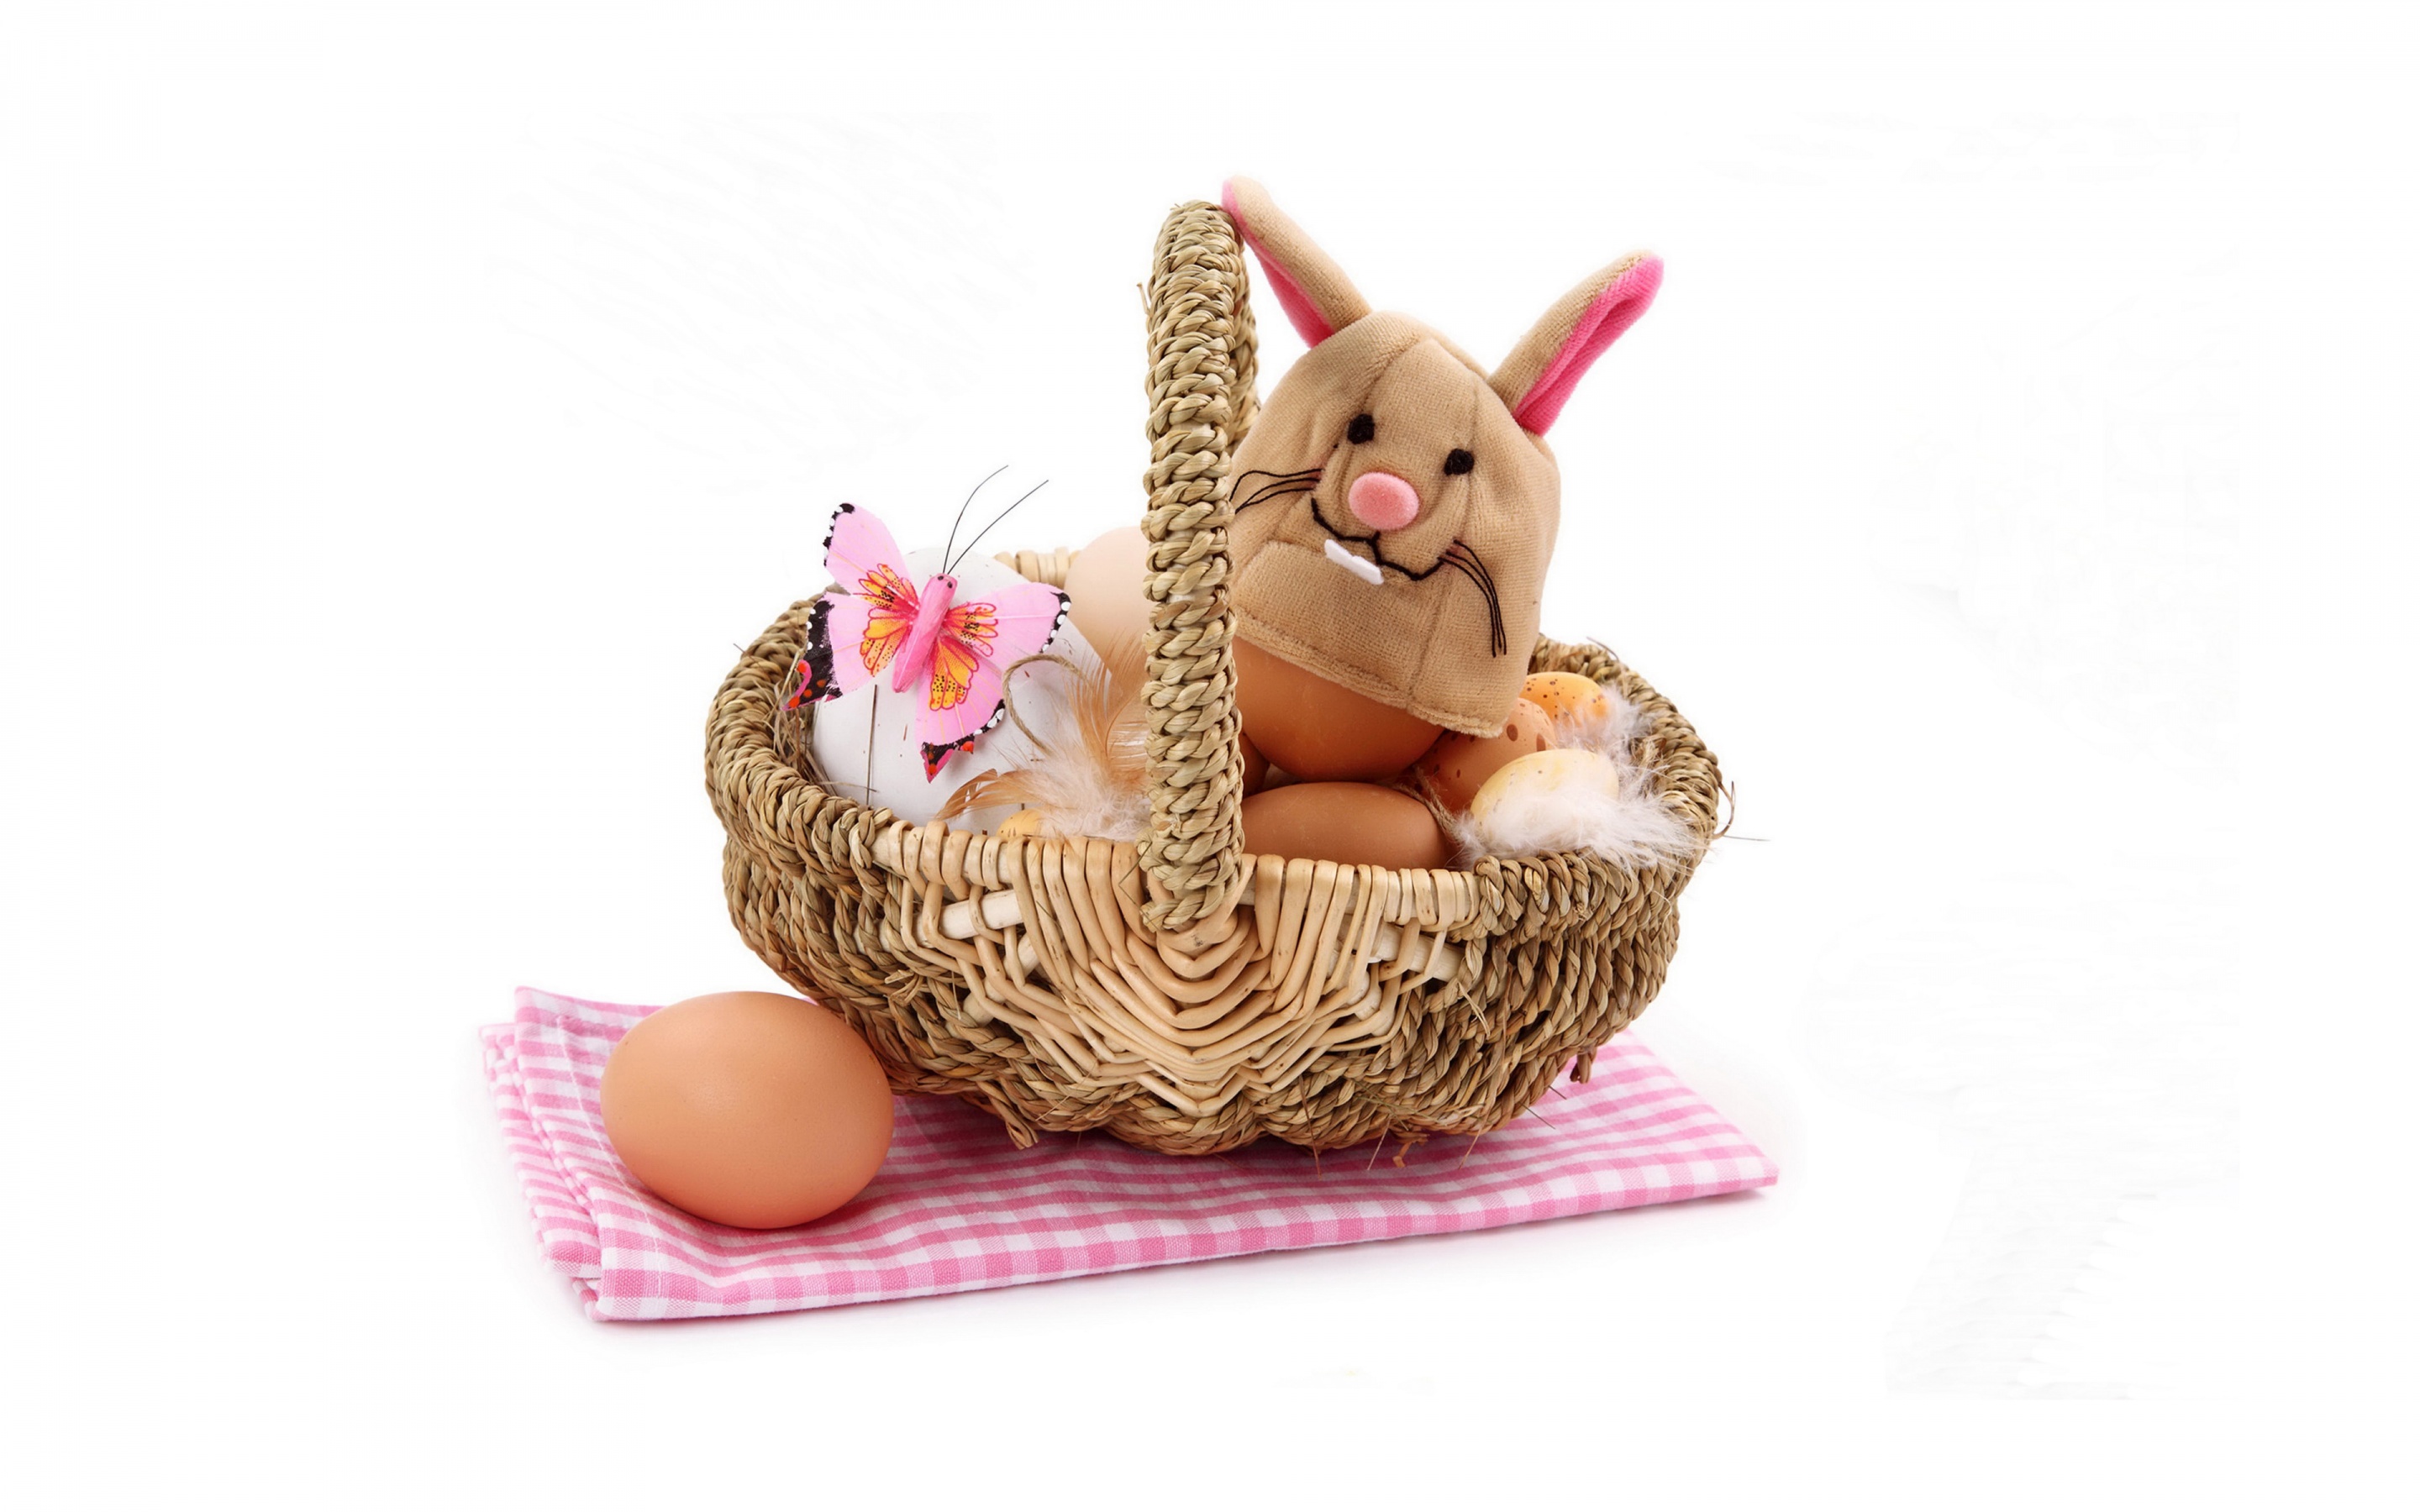 Easter - Eggs In Wicker Basket